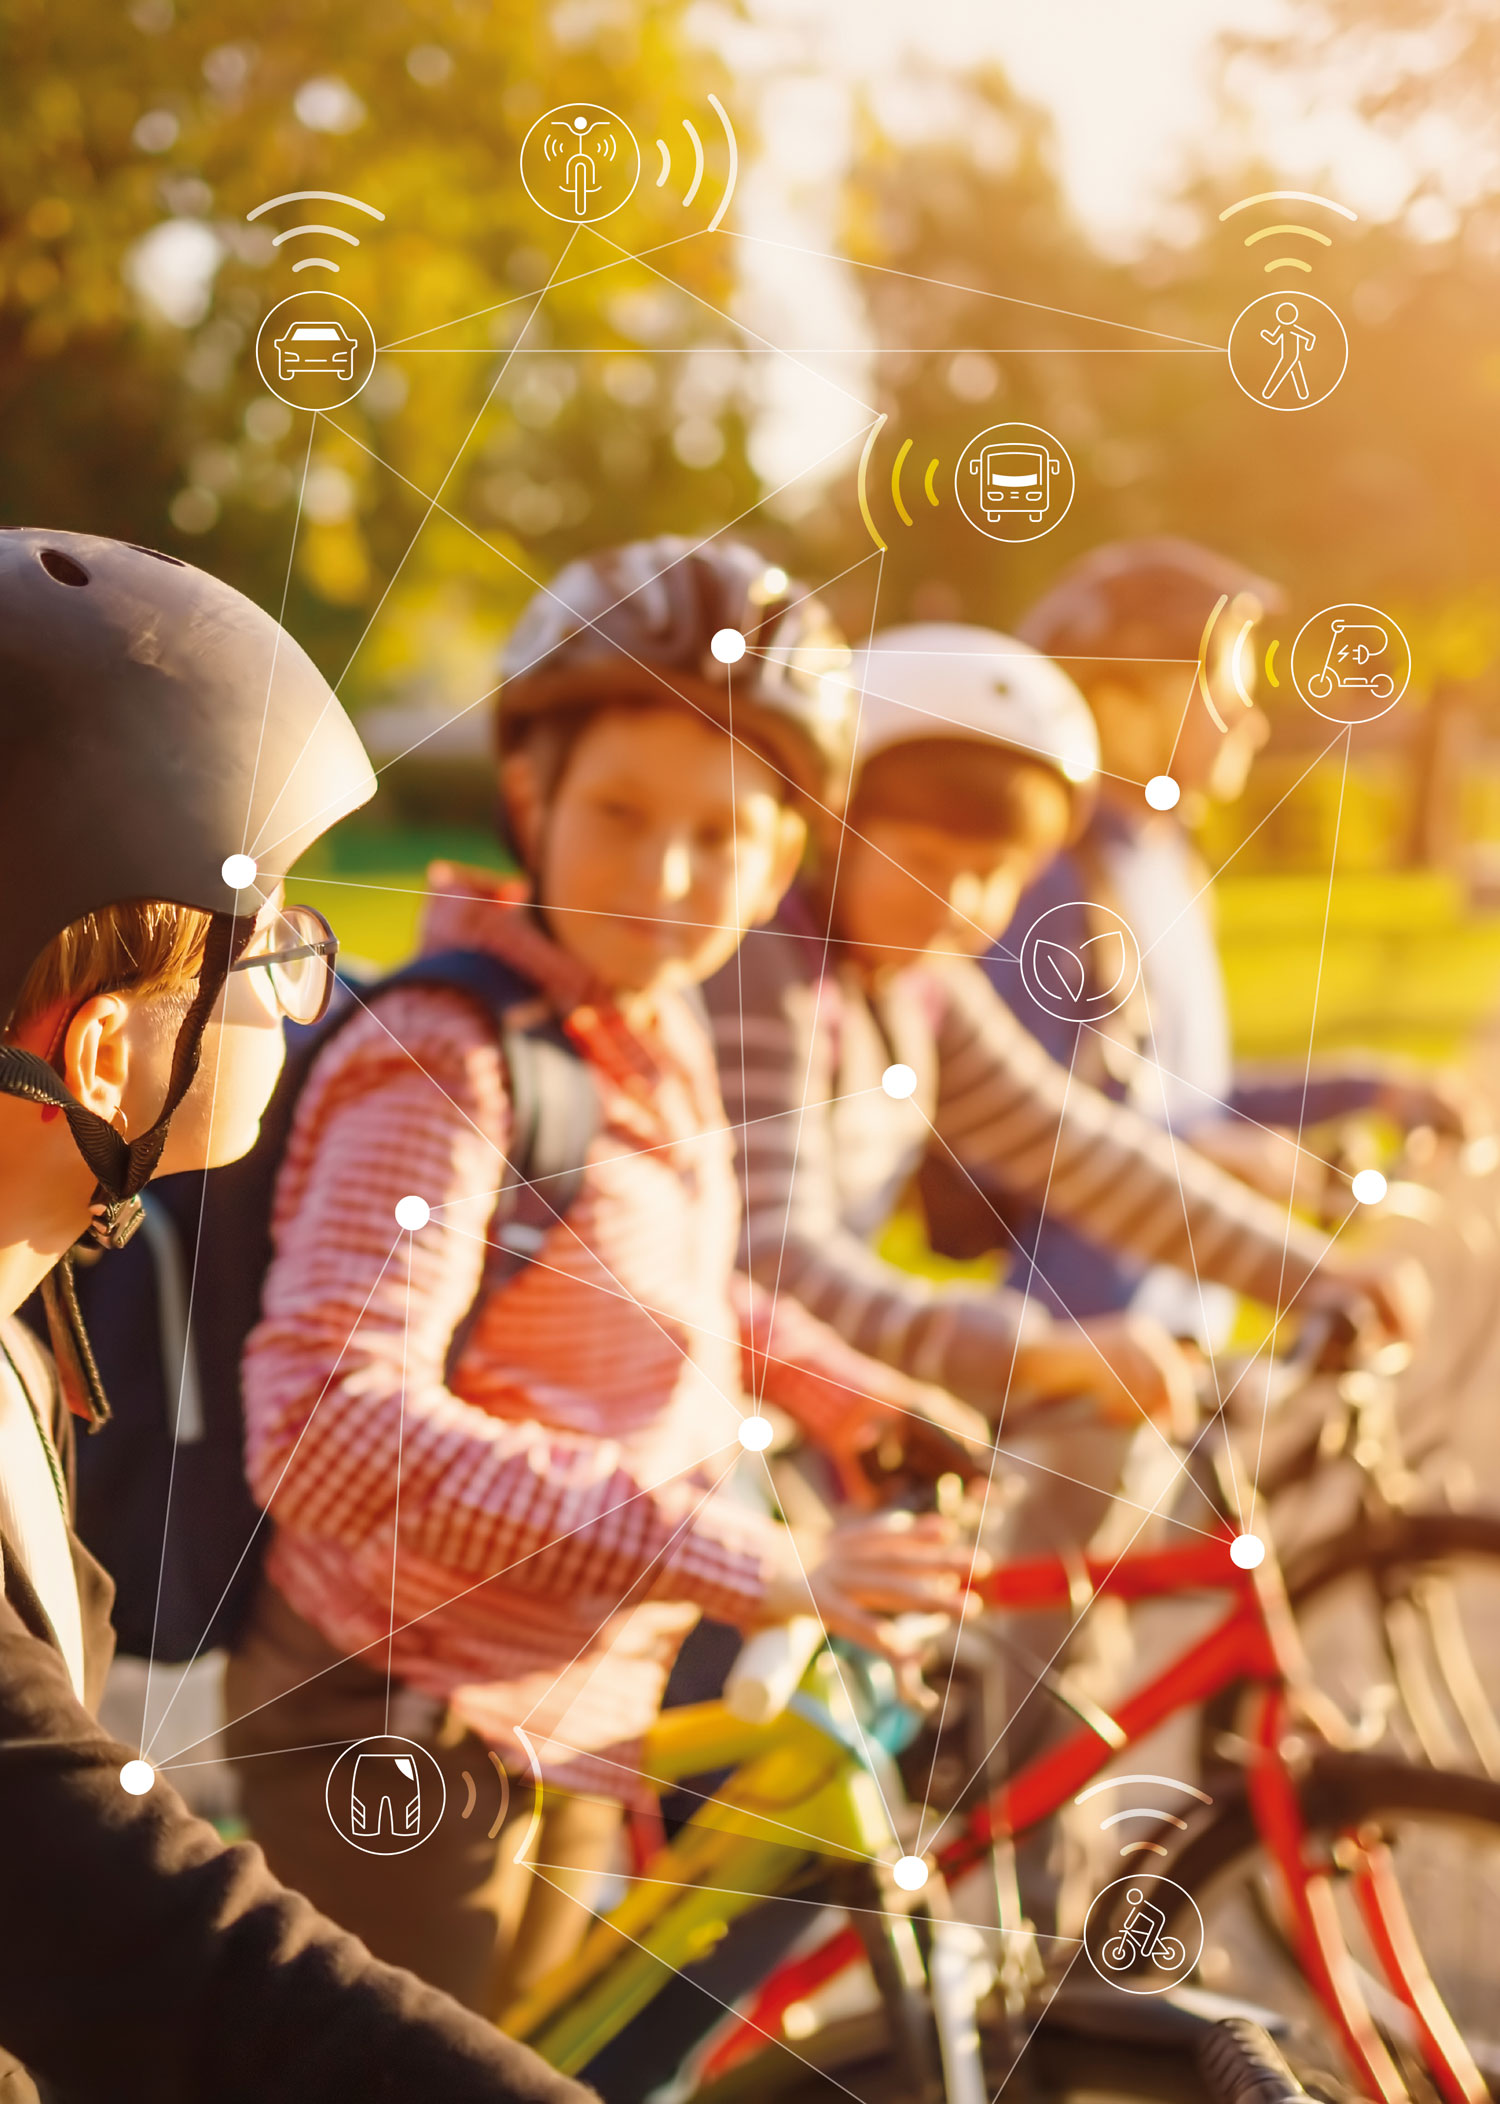 Mehr Sicherheit für alle Verkehrsteilnehmenden: Kinder am Fahrrad